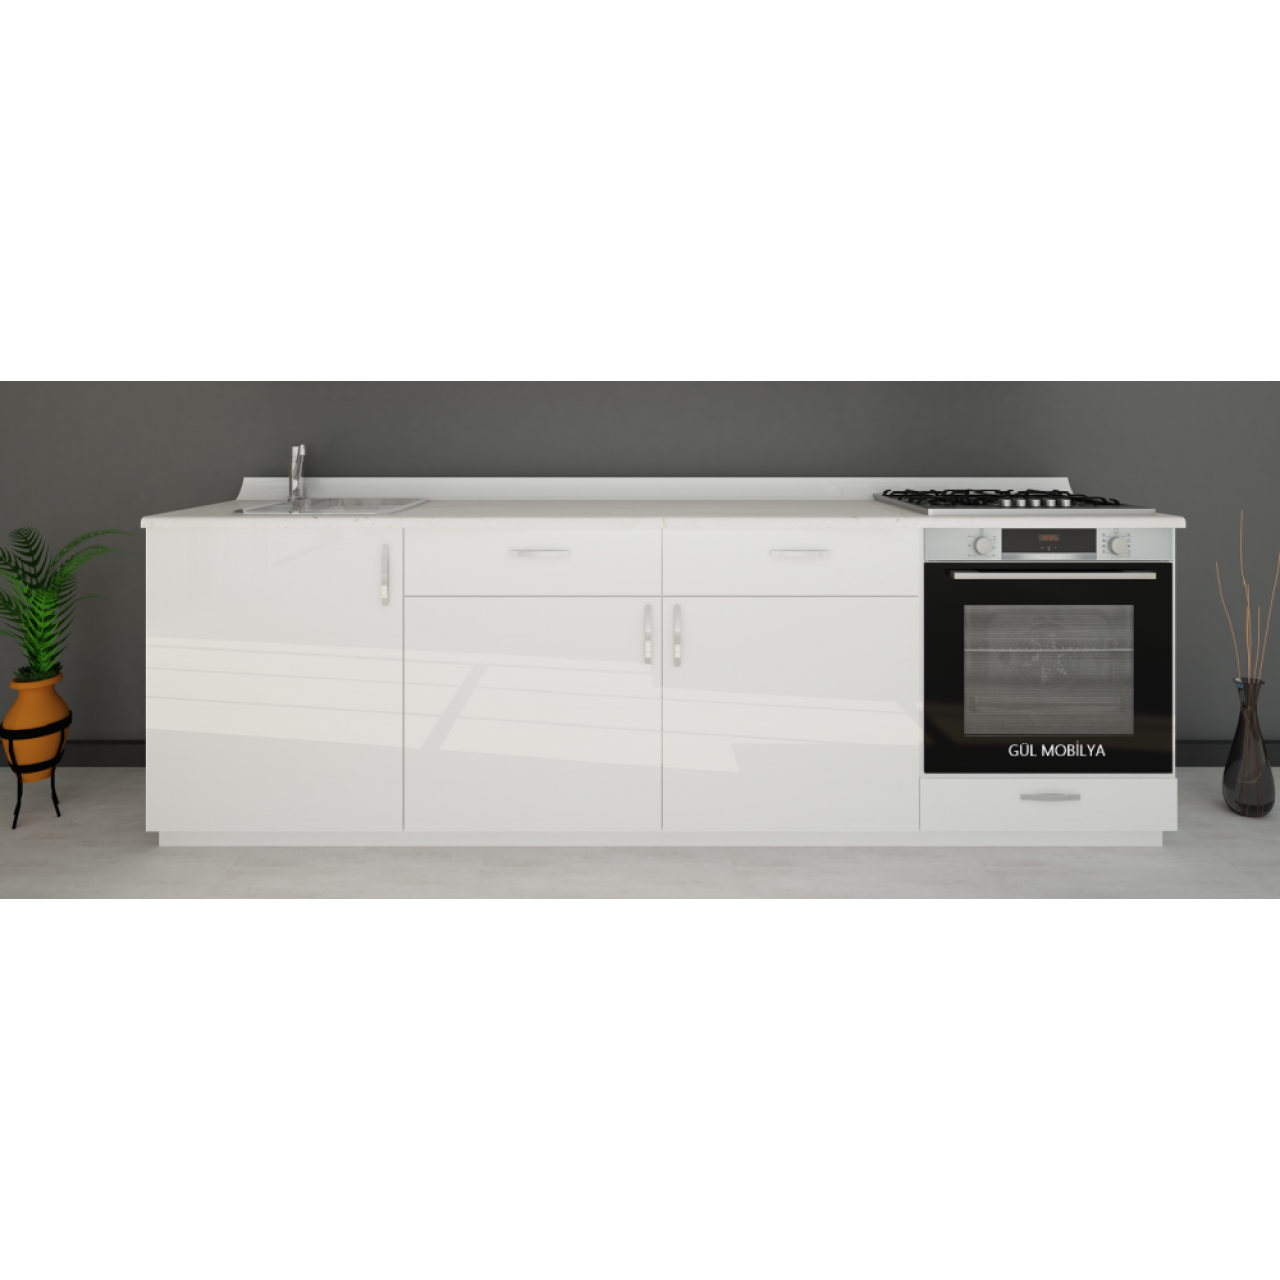 240 cm Mutfak alt dolap MDFLAM  PARLAK kapaklı Hazır modüler mutfak dolabı